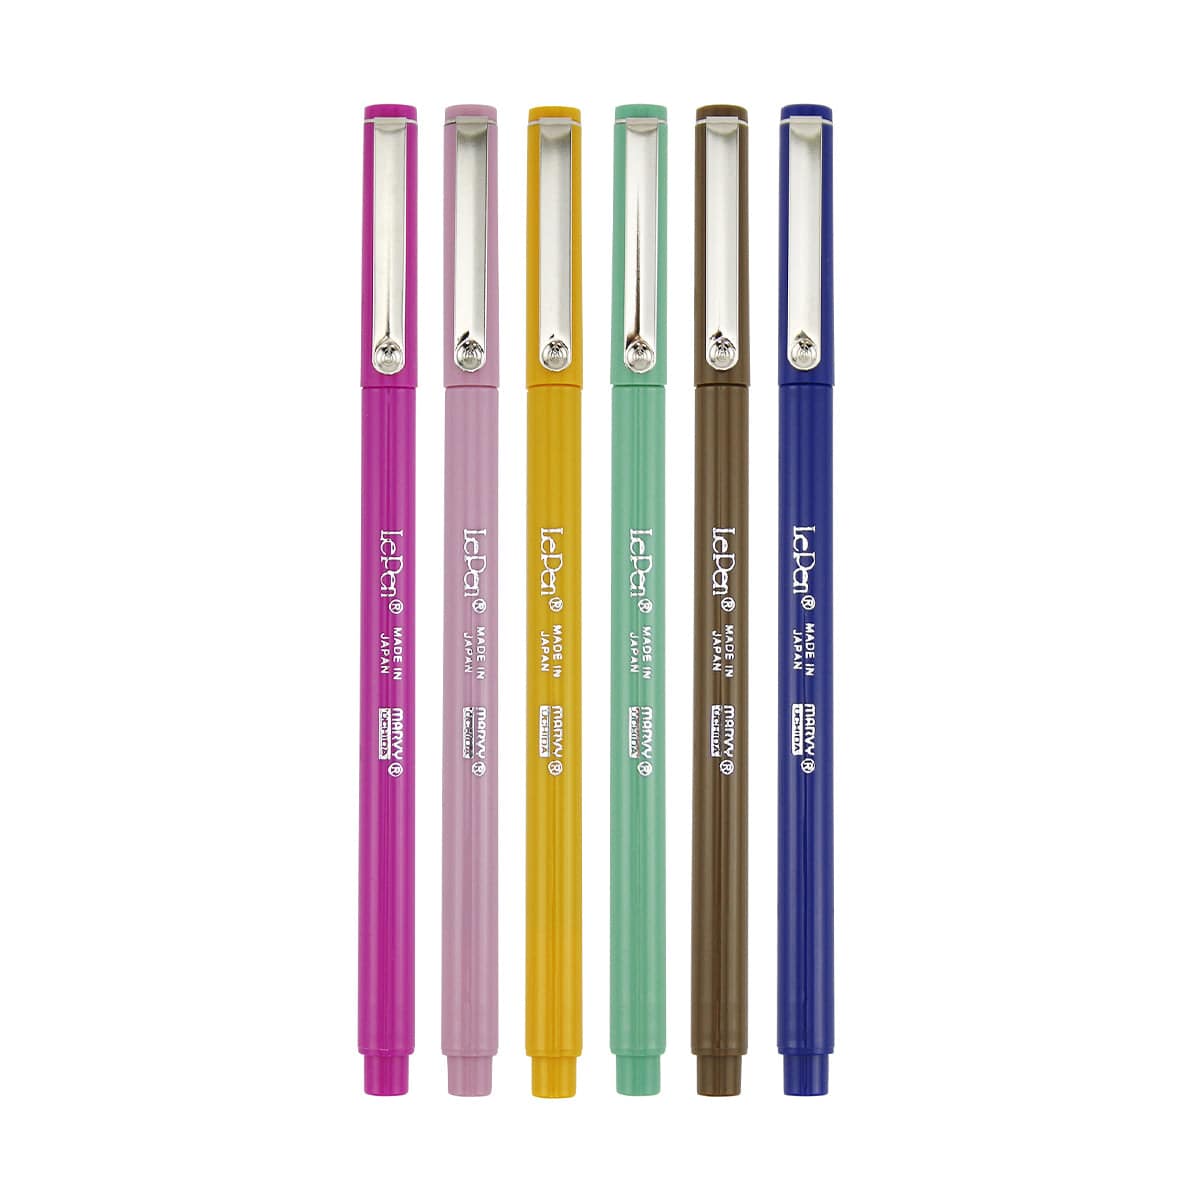  Le Pen Retro Colors 6 Piece Set, 0.3mm point : Office Products